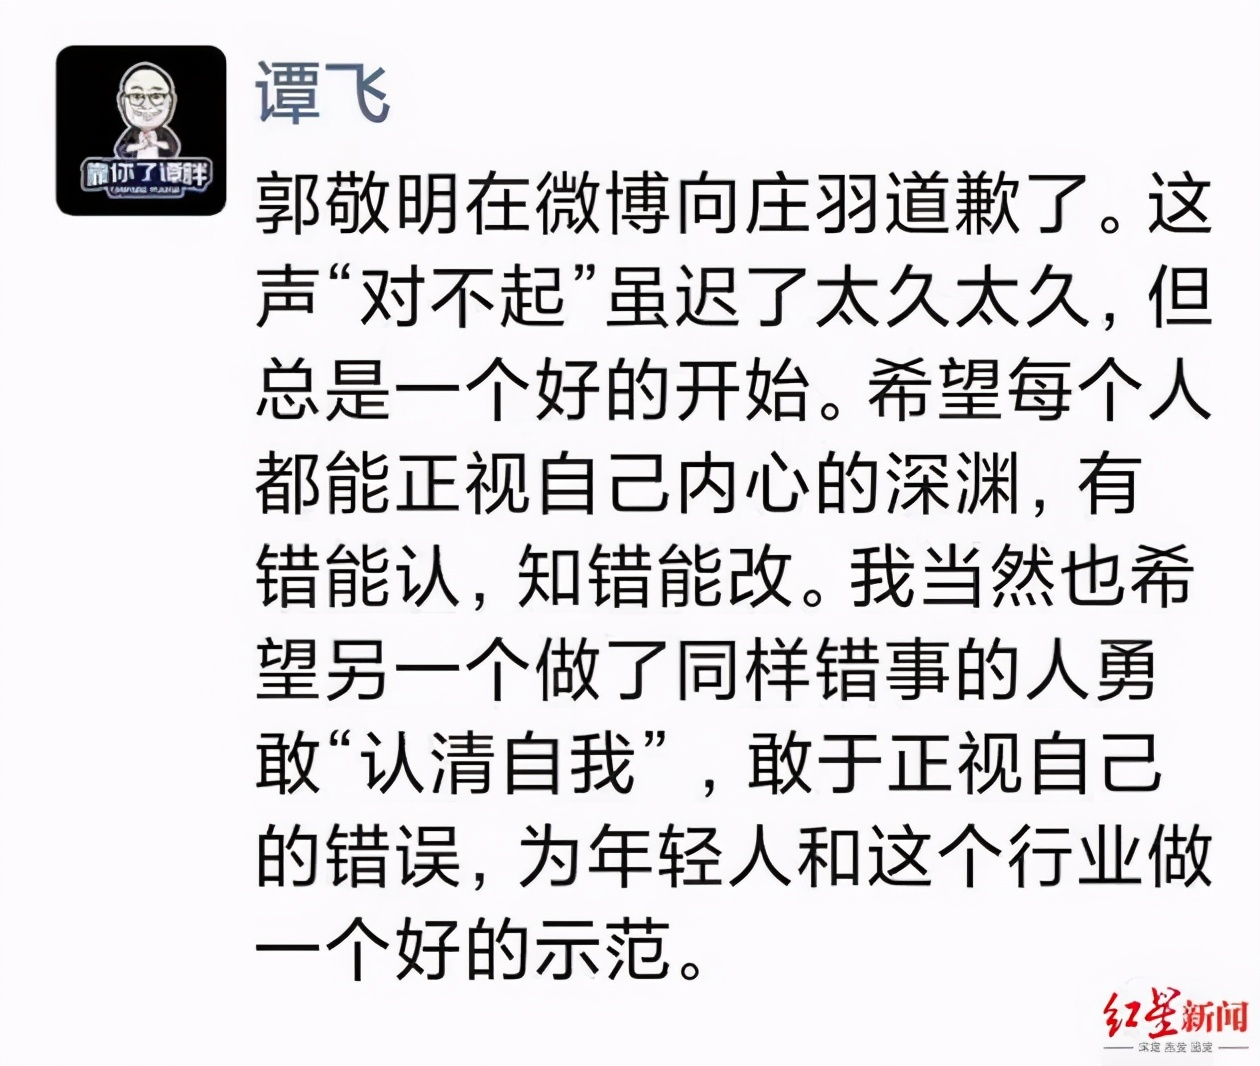 庄羽接受郭敬明的道歉，提议成立反剽窃基金，于正的微博沦陷了